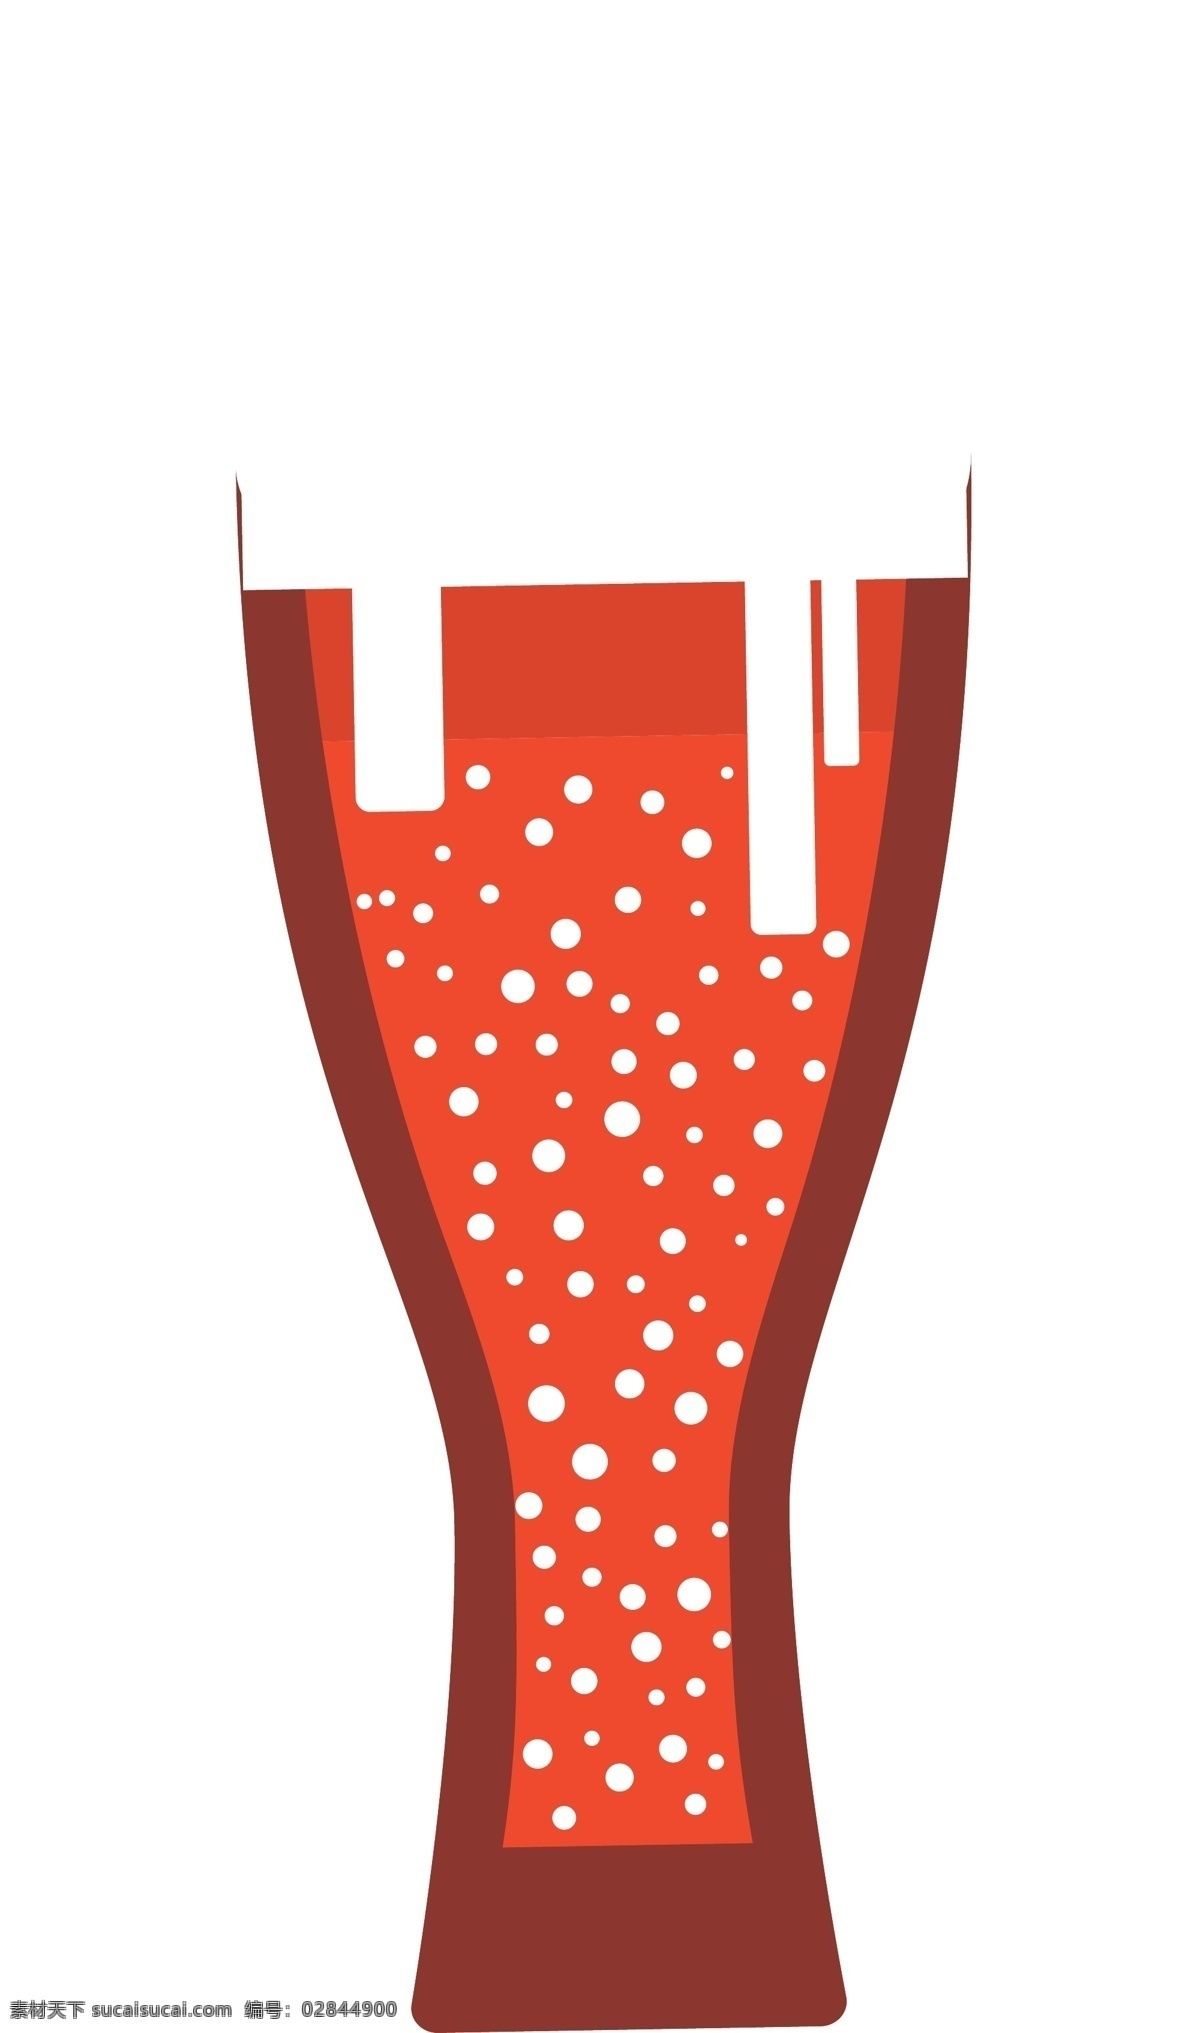 矢量 手绘 卡通 汽水 杯 汽水杯 红色 可乐 啤酒 饮料 果汁 玻璃杯 啤酒杯 饮料杯 冷饮 咖啡